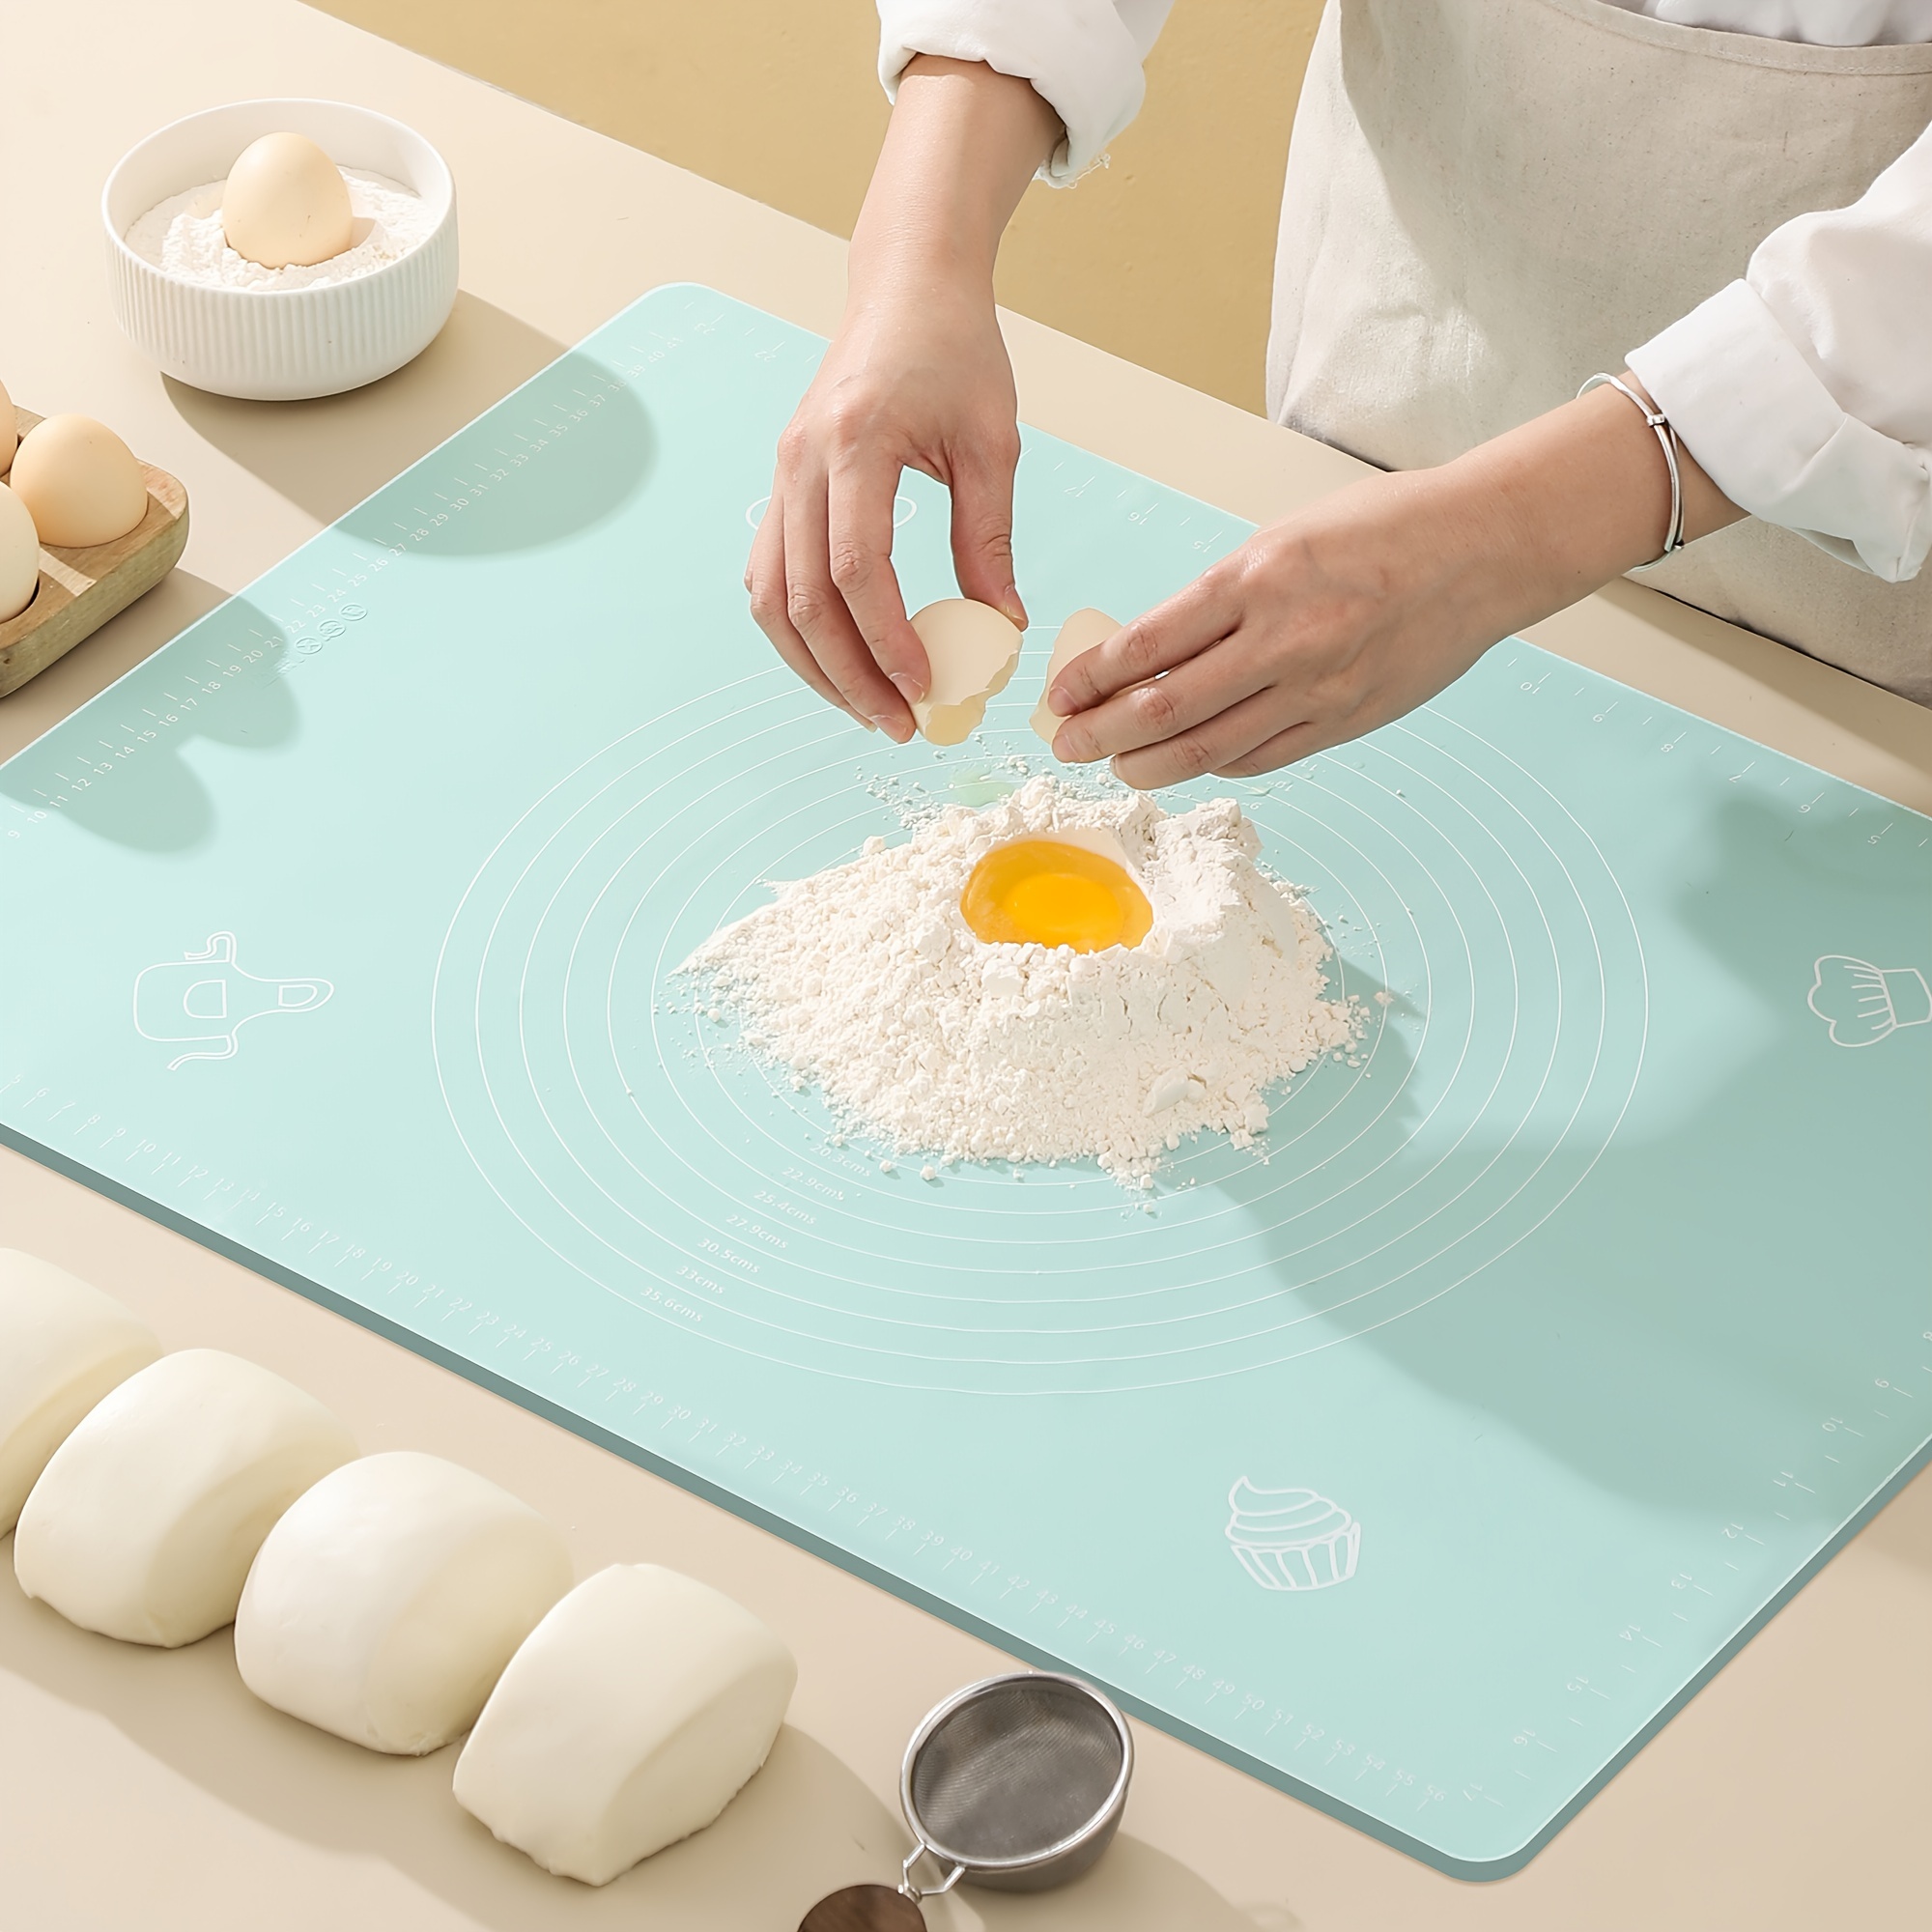 Silicon mat Baking sheet - kitchen silicon roti mat Non Slip with